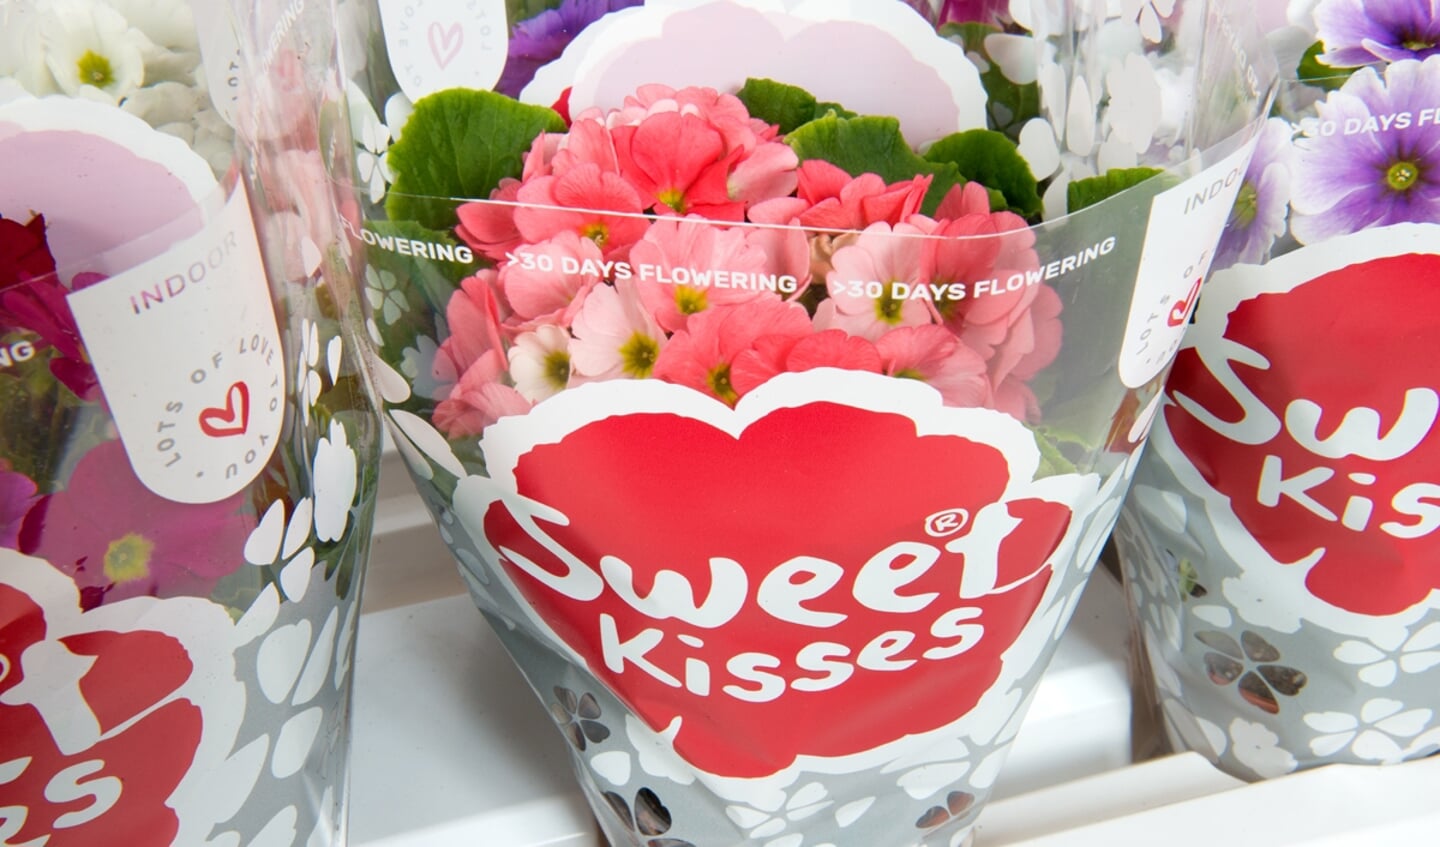 Sweet kisses in vrolijke kleuren.